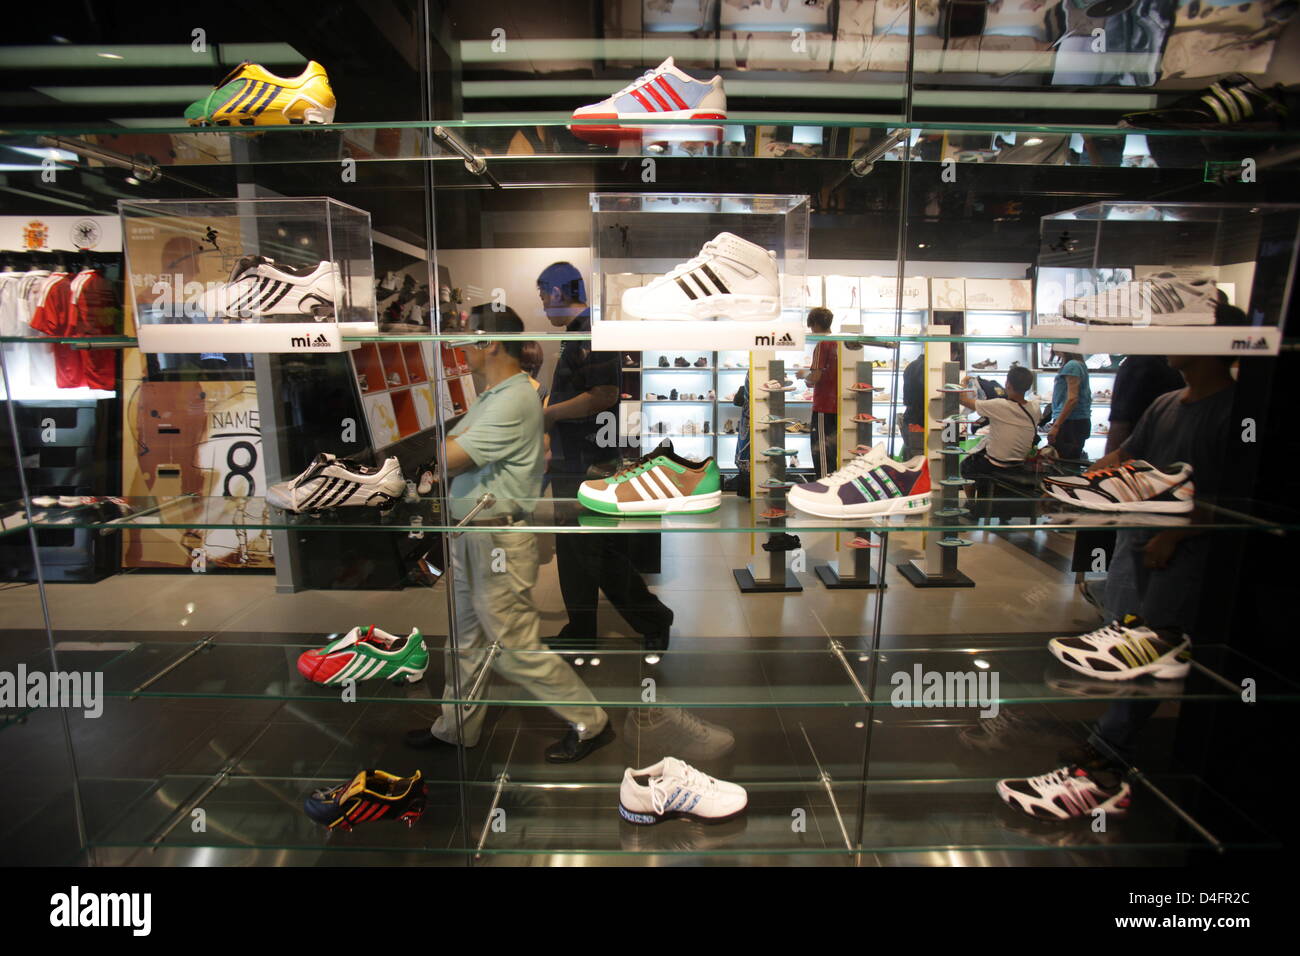 Una vista del interior del nuevo "Centro" de la marca Adidas, hasta ahora  la tienda adidas más grande del mundo, en Beijing, China, 19 de agosto de  2008. La tienda abarca 3,170m2